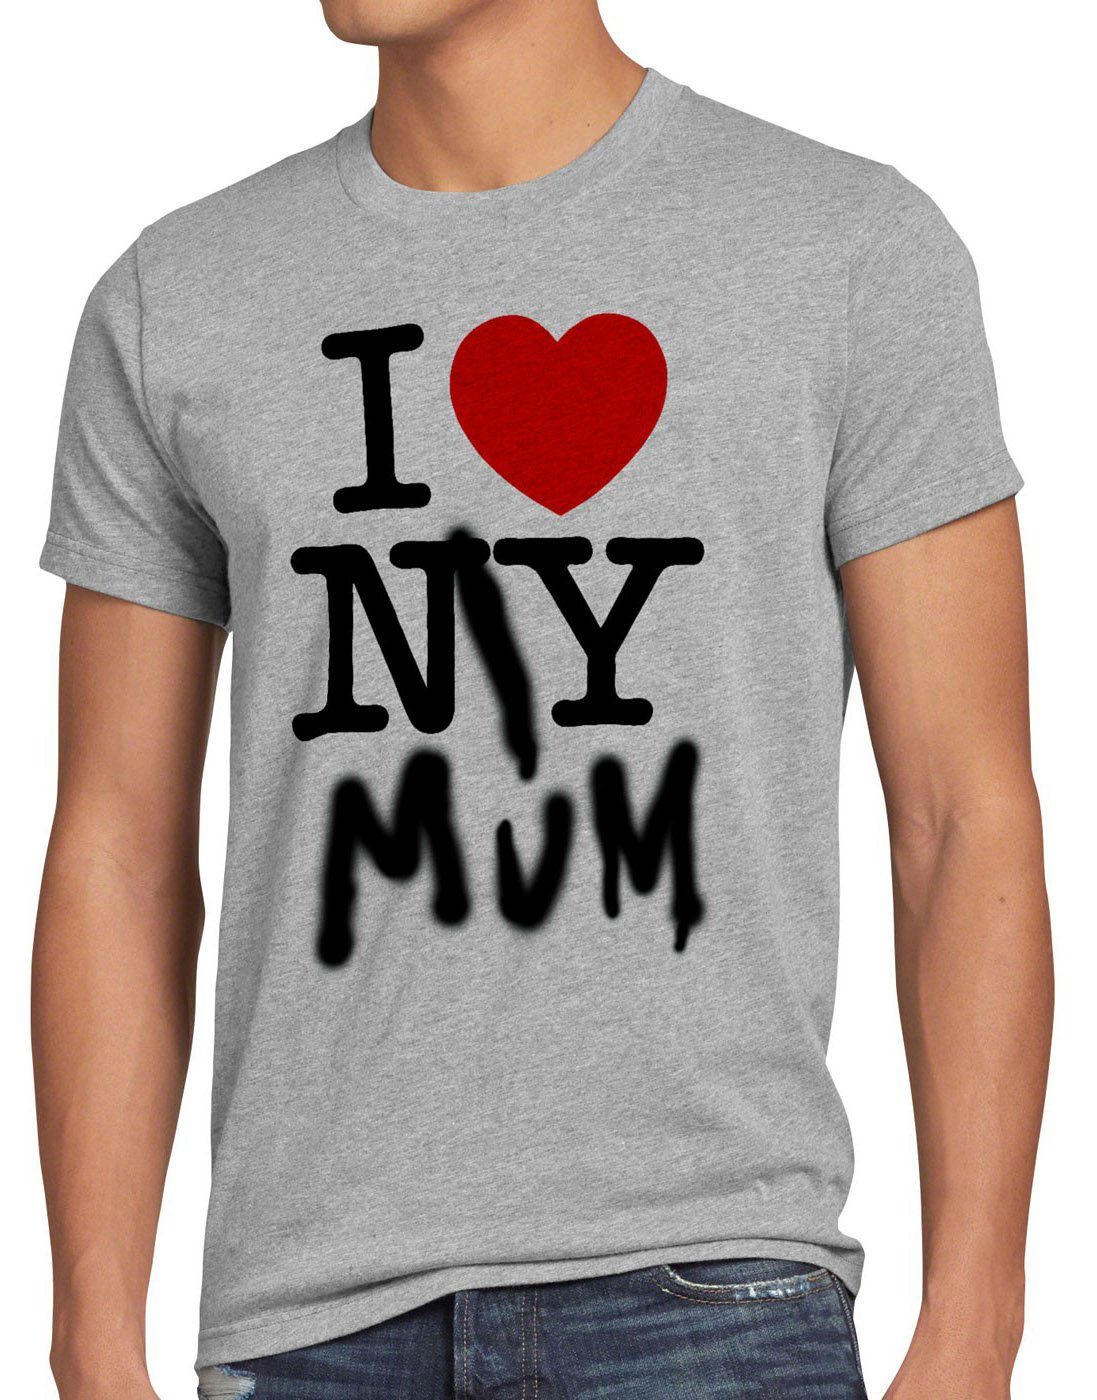 ny style3 amerika Print-Shirt usa T-Shirt My I Love meliert york Herren Mum new muttertag herz grau